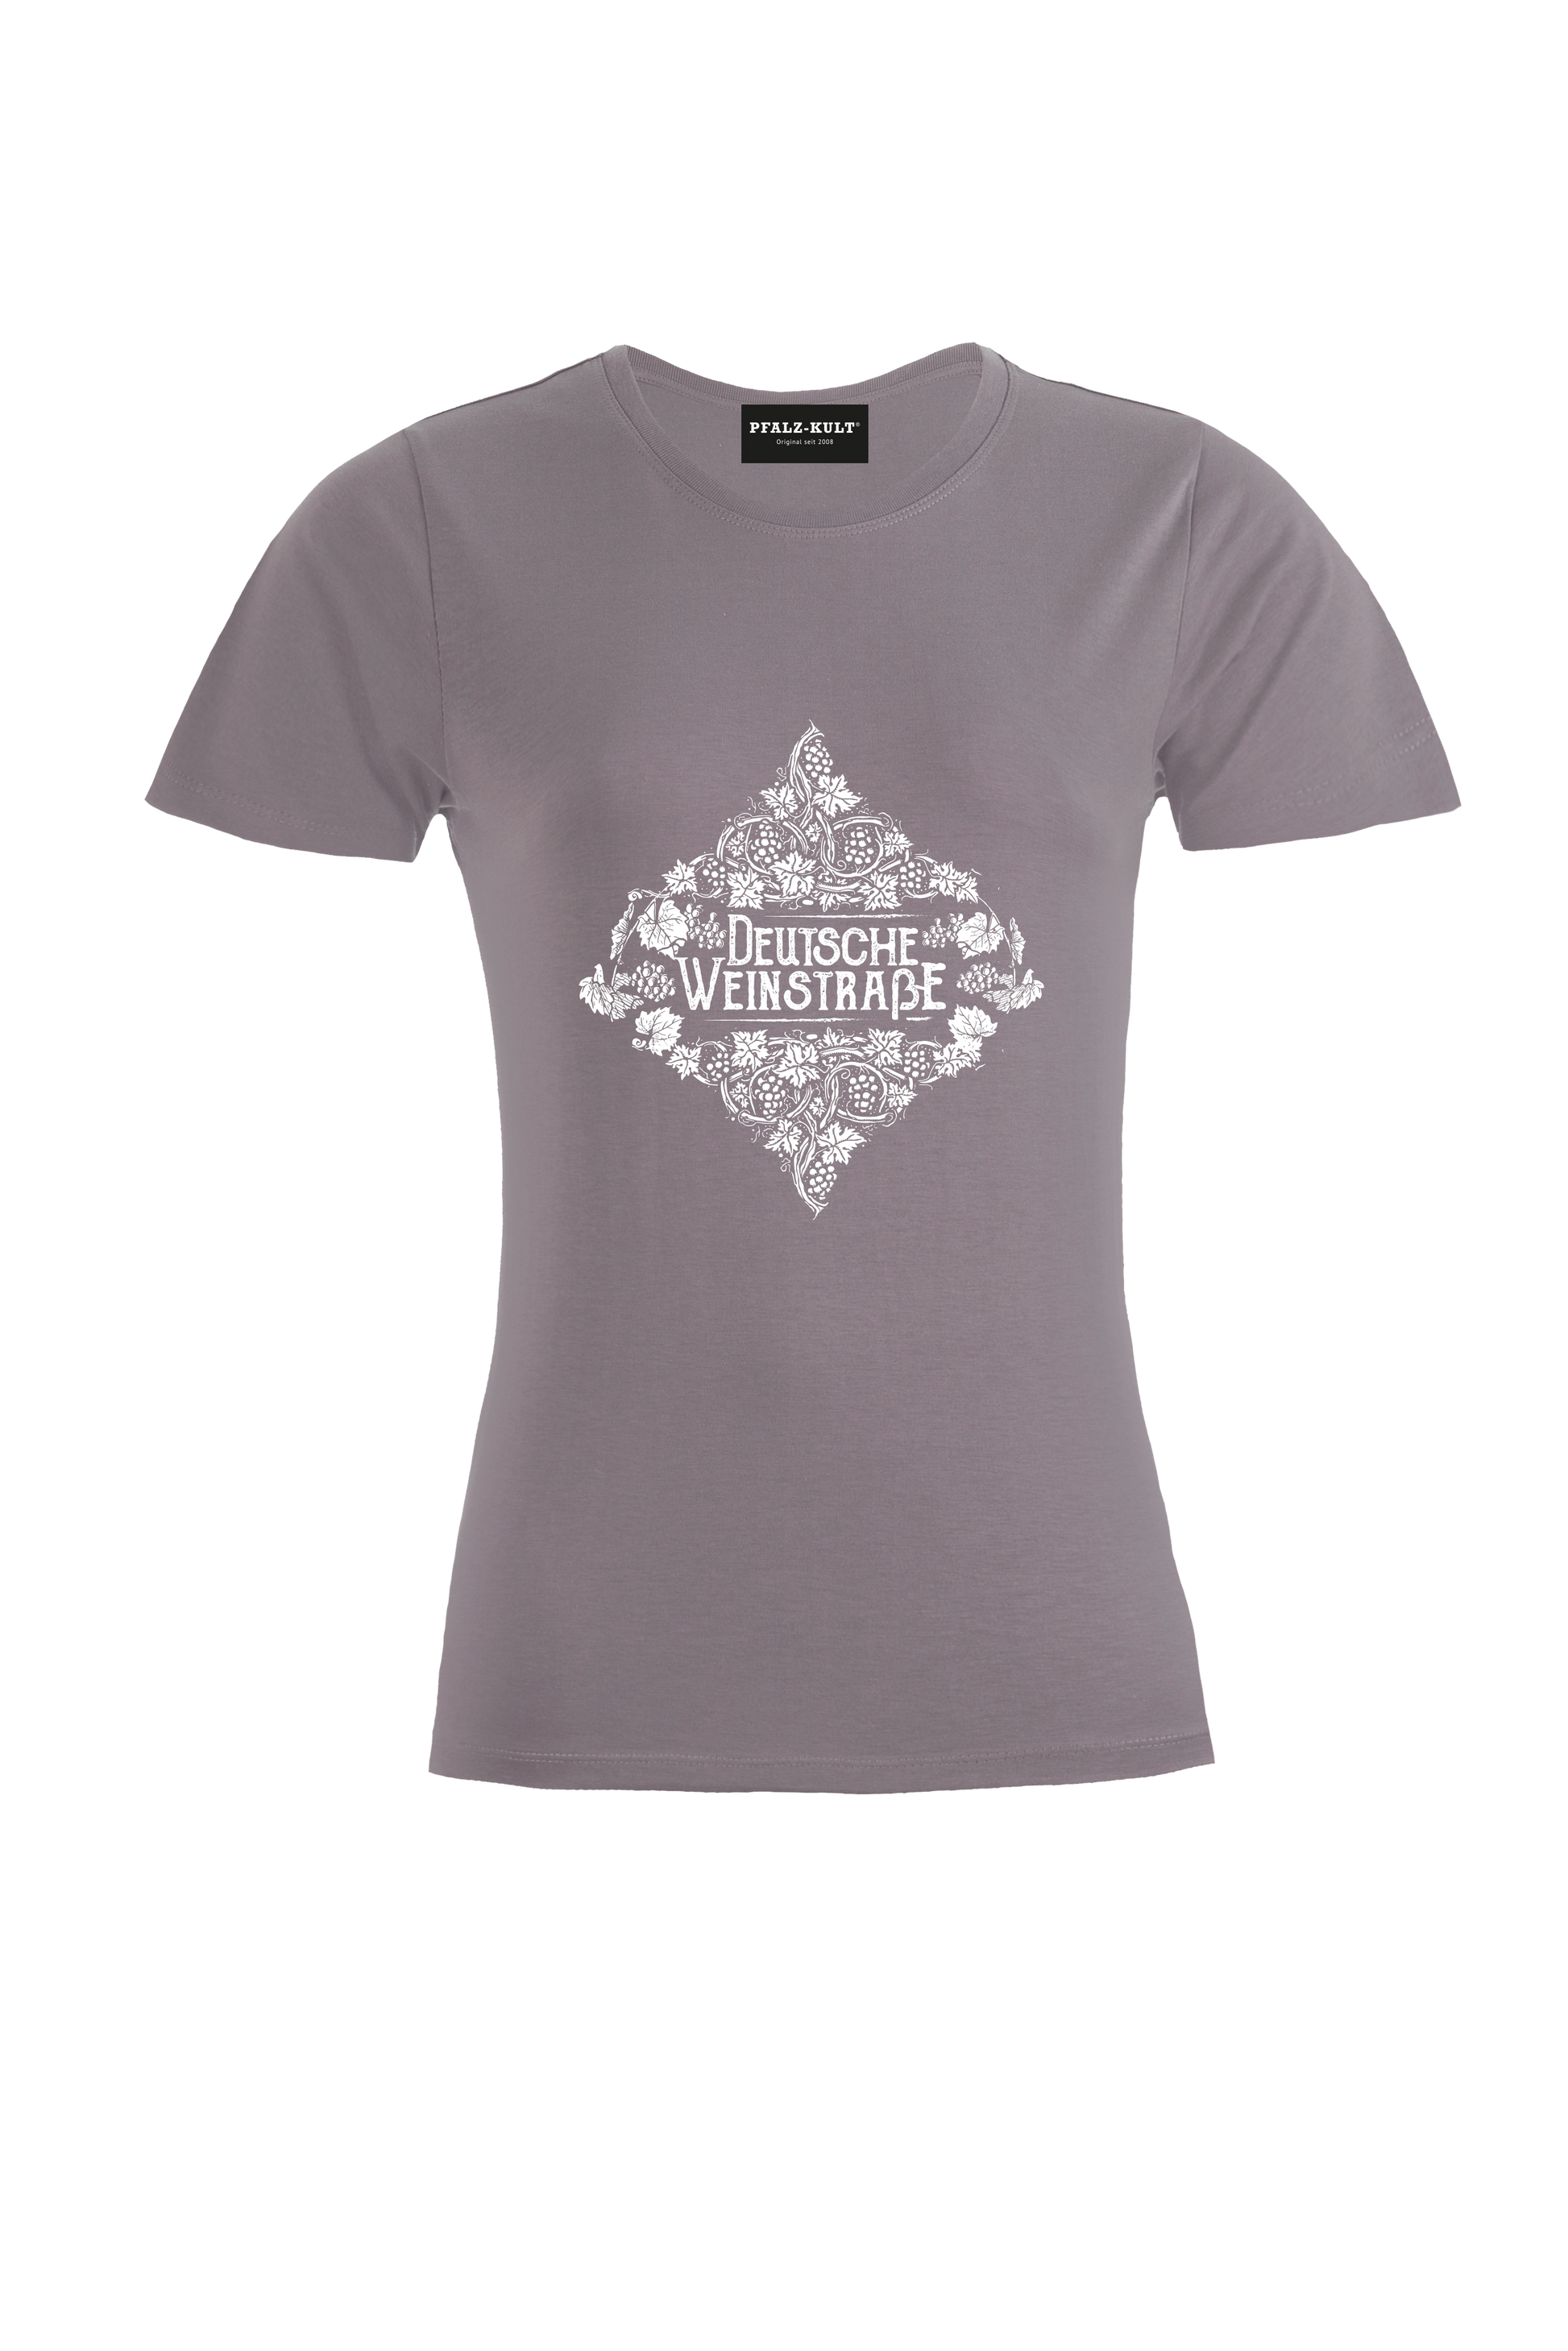 Hellgraues Pfalz-Kult Damen Shirt mit dem Aufdruck "Deutsche Weinstrasse" .  Das ideale Geschenk für jedes Pfalzkind vom Textildruck Spezialisten aus Bad Dürkheim.